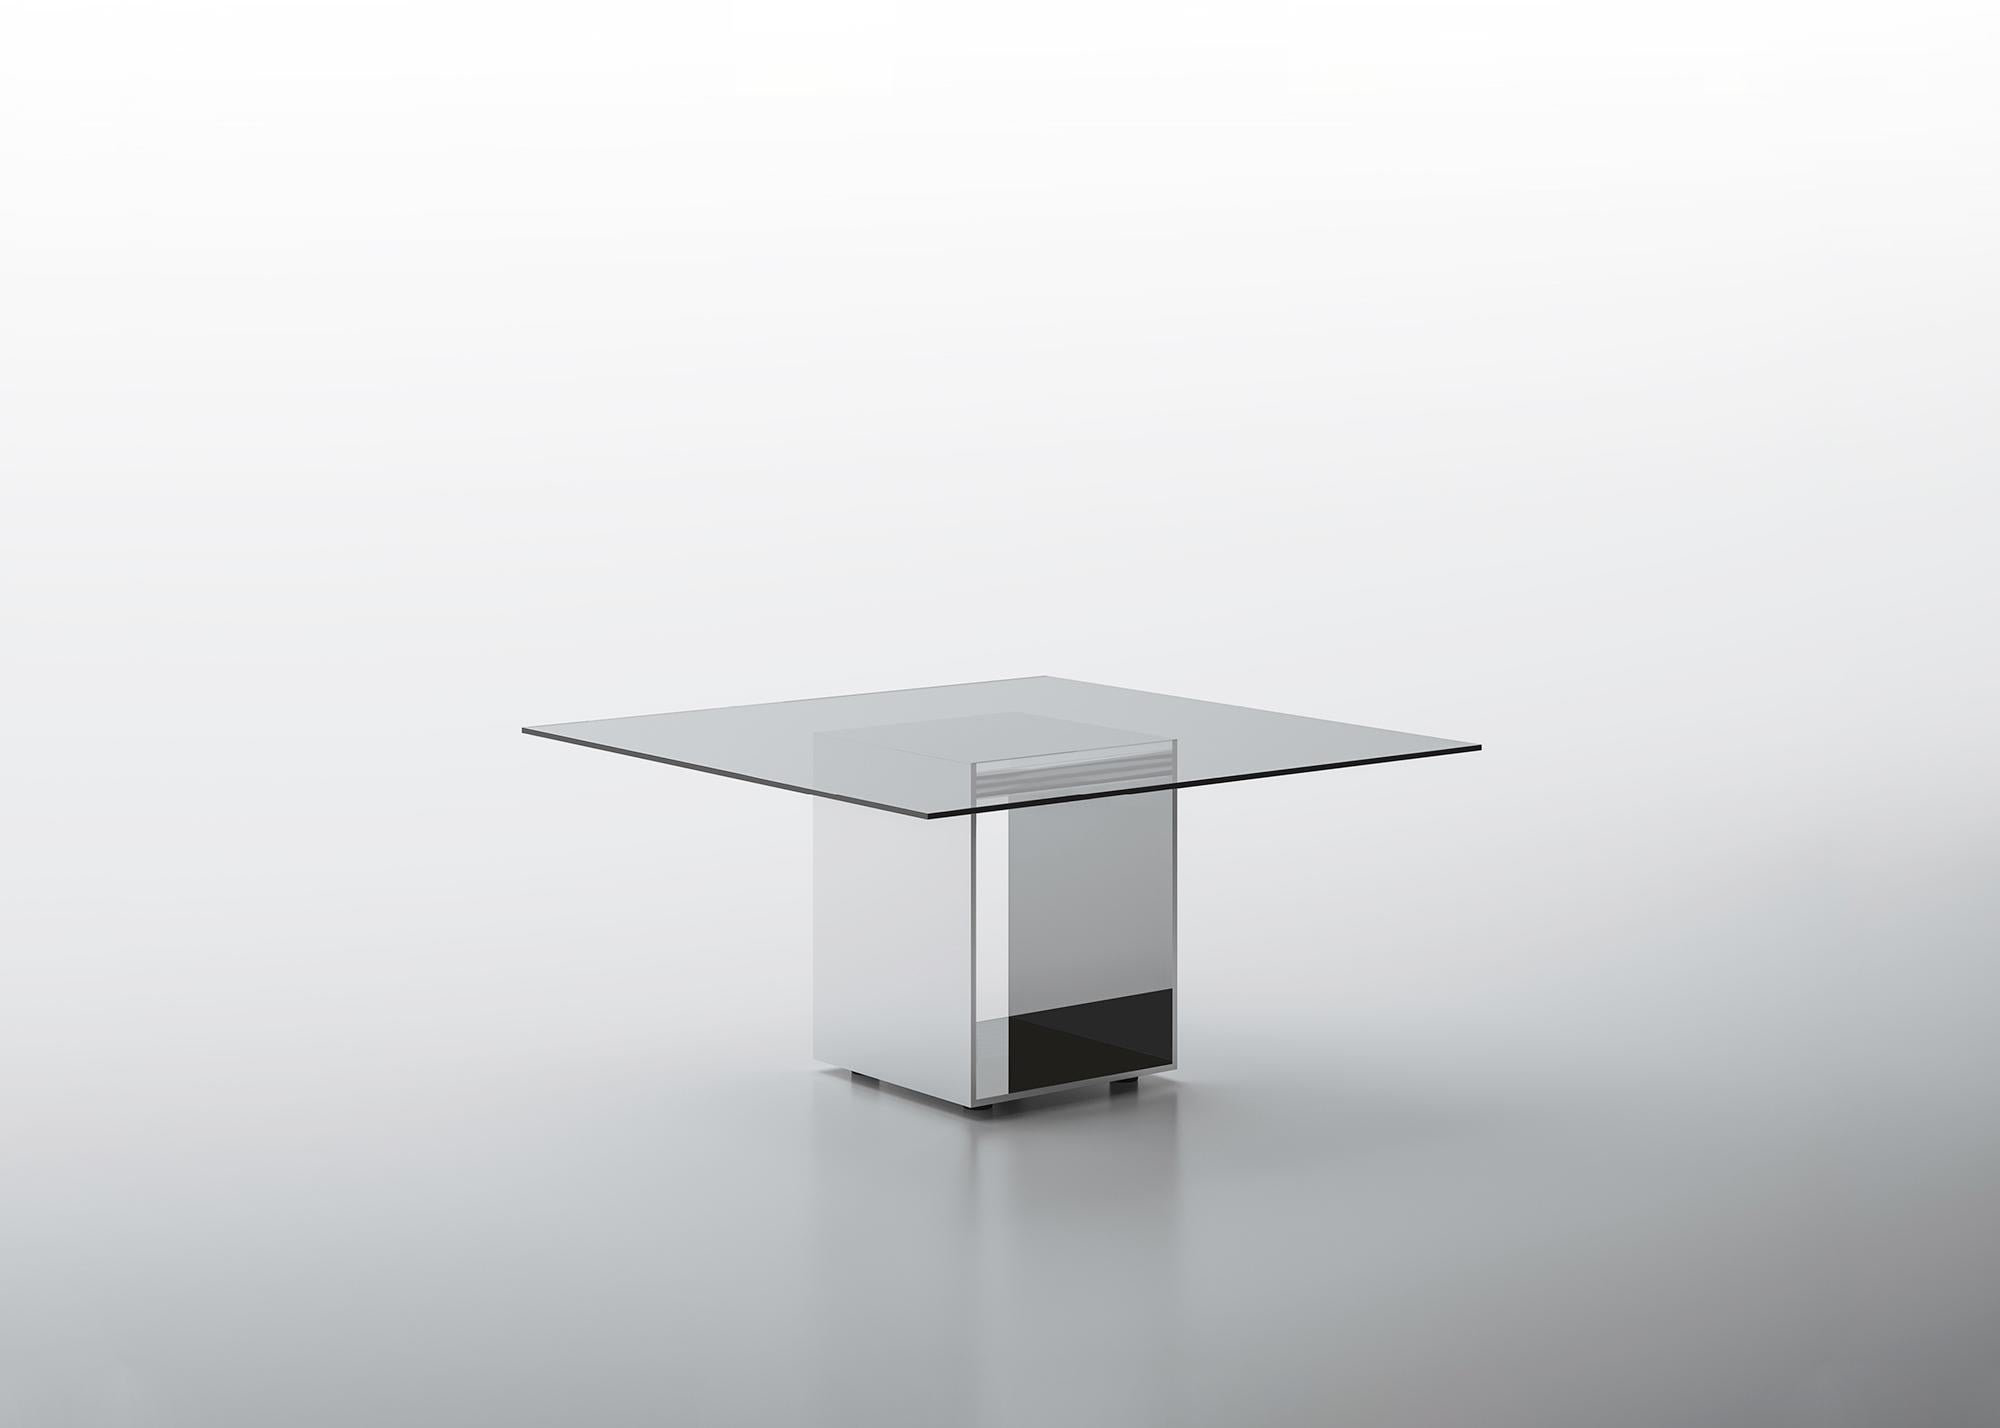 Judd ist ein Tischsystem, das eine essentielle Linie mit reichhaltigen Materialien verbindet. Eine innovative Strukturplatte bildet die Basis des Tisches. Das Äußere ist aus hochglanzpoliertem Edelstahl, das Innere ist mit Spiegel, Bleispiegel oder